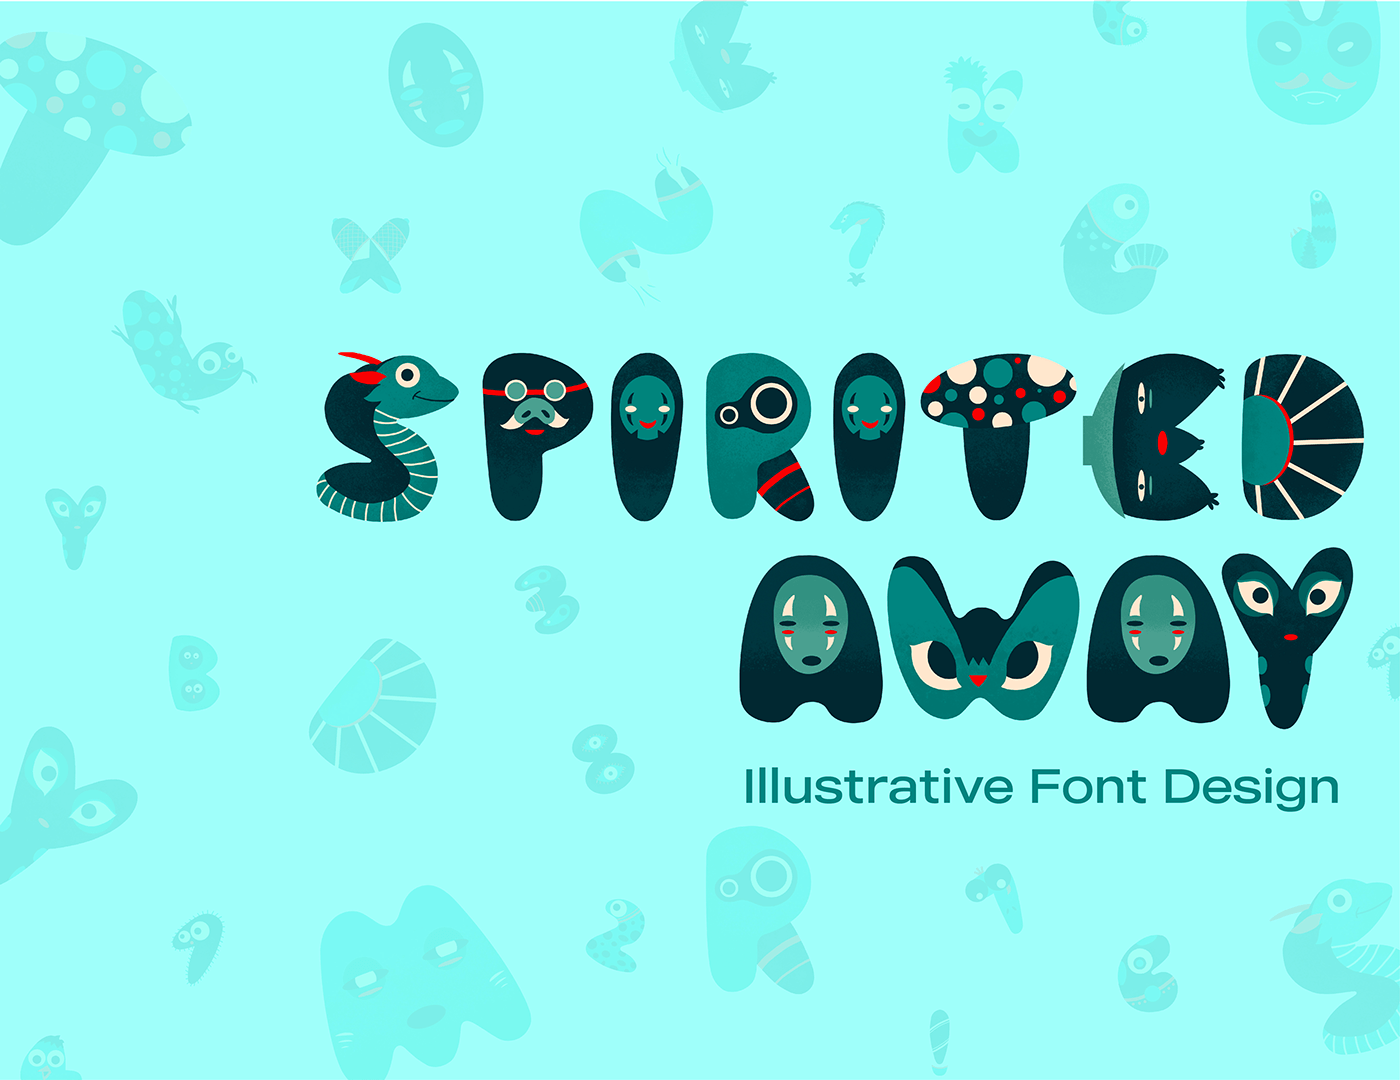 font design typography   Graphic Designer Social media post marketing   Brand Design branding  Advertising  type lettering